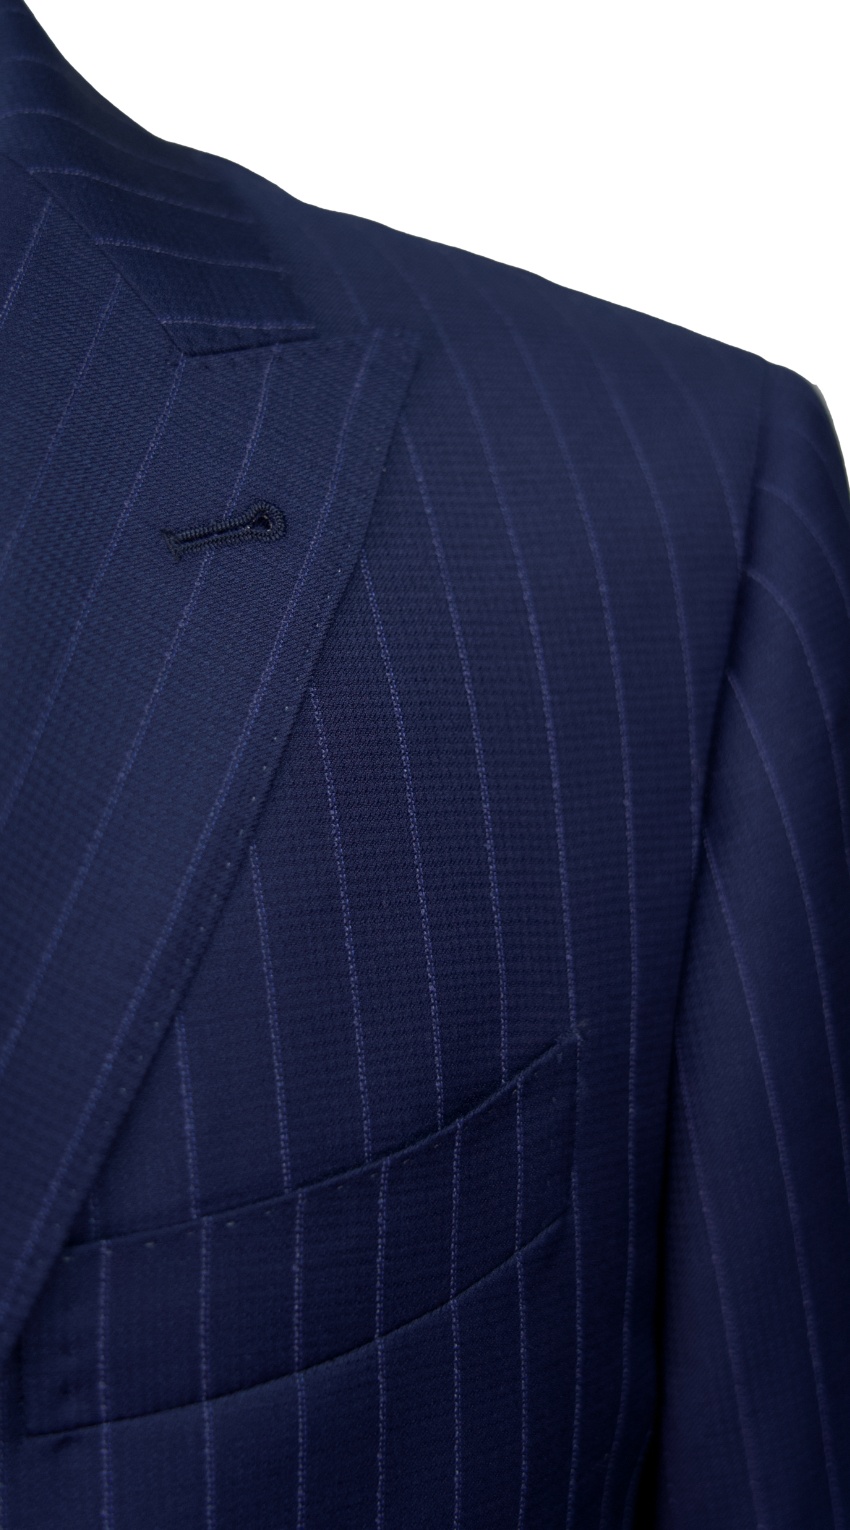 Cobalt Blue Pinstripe Suit